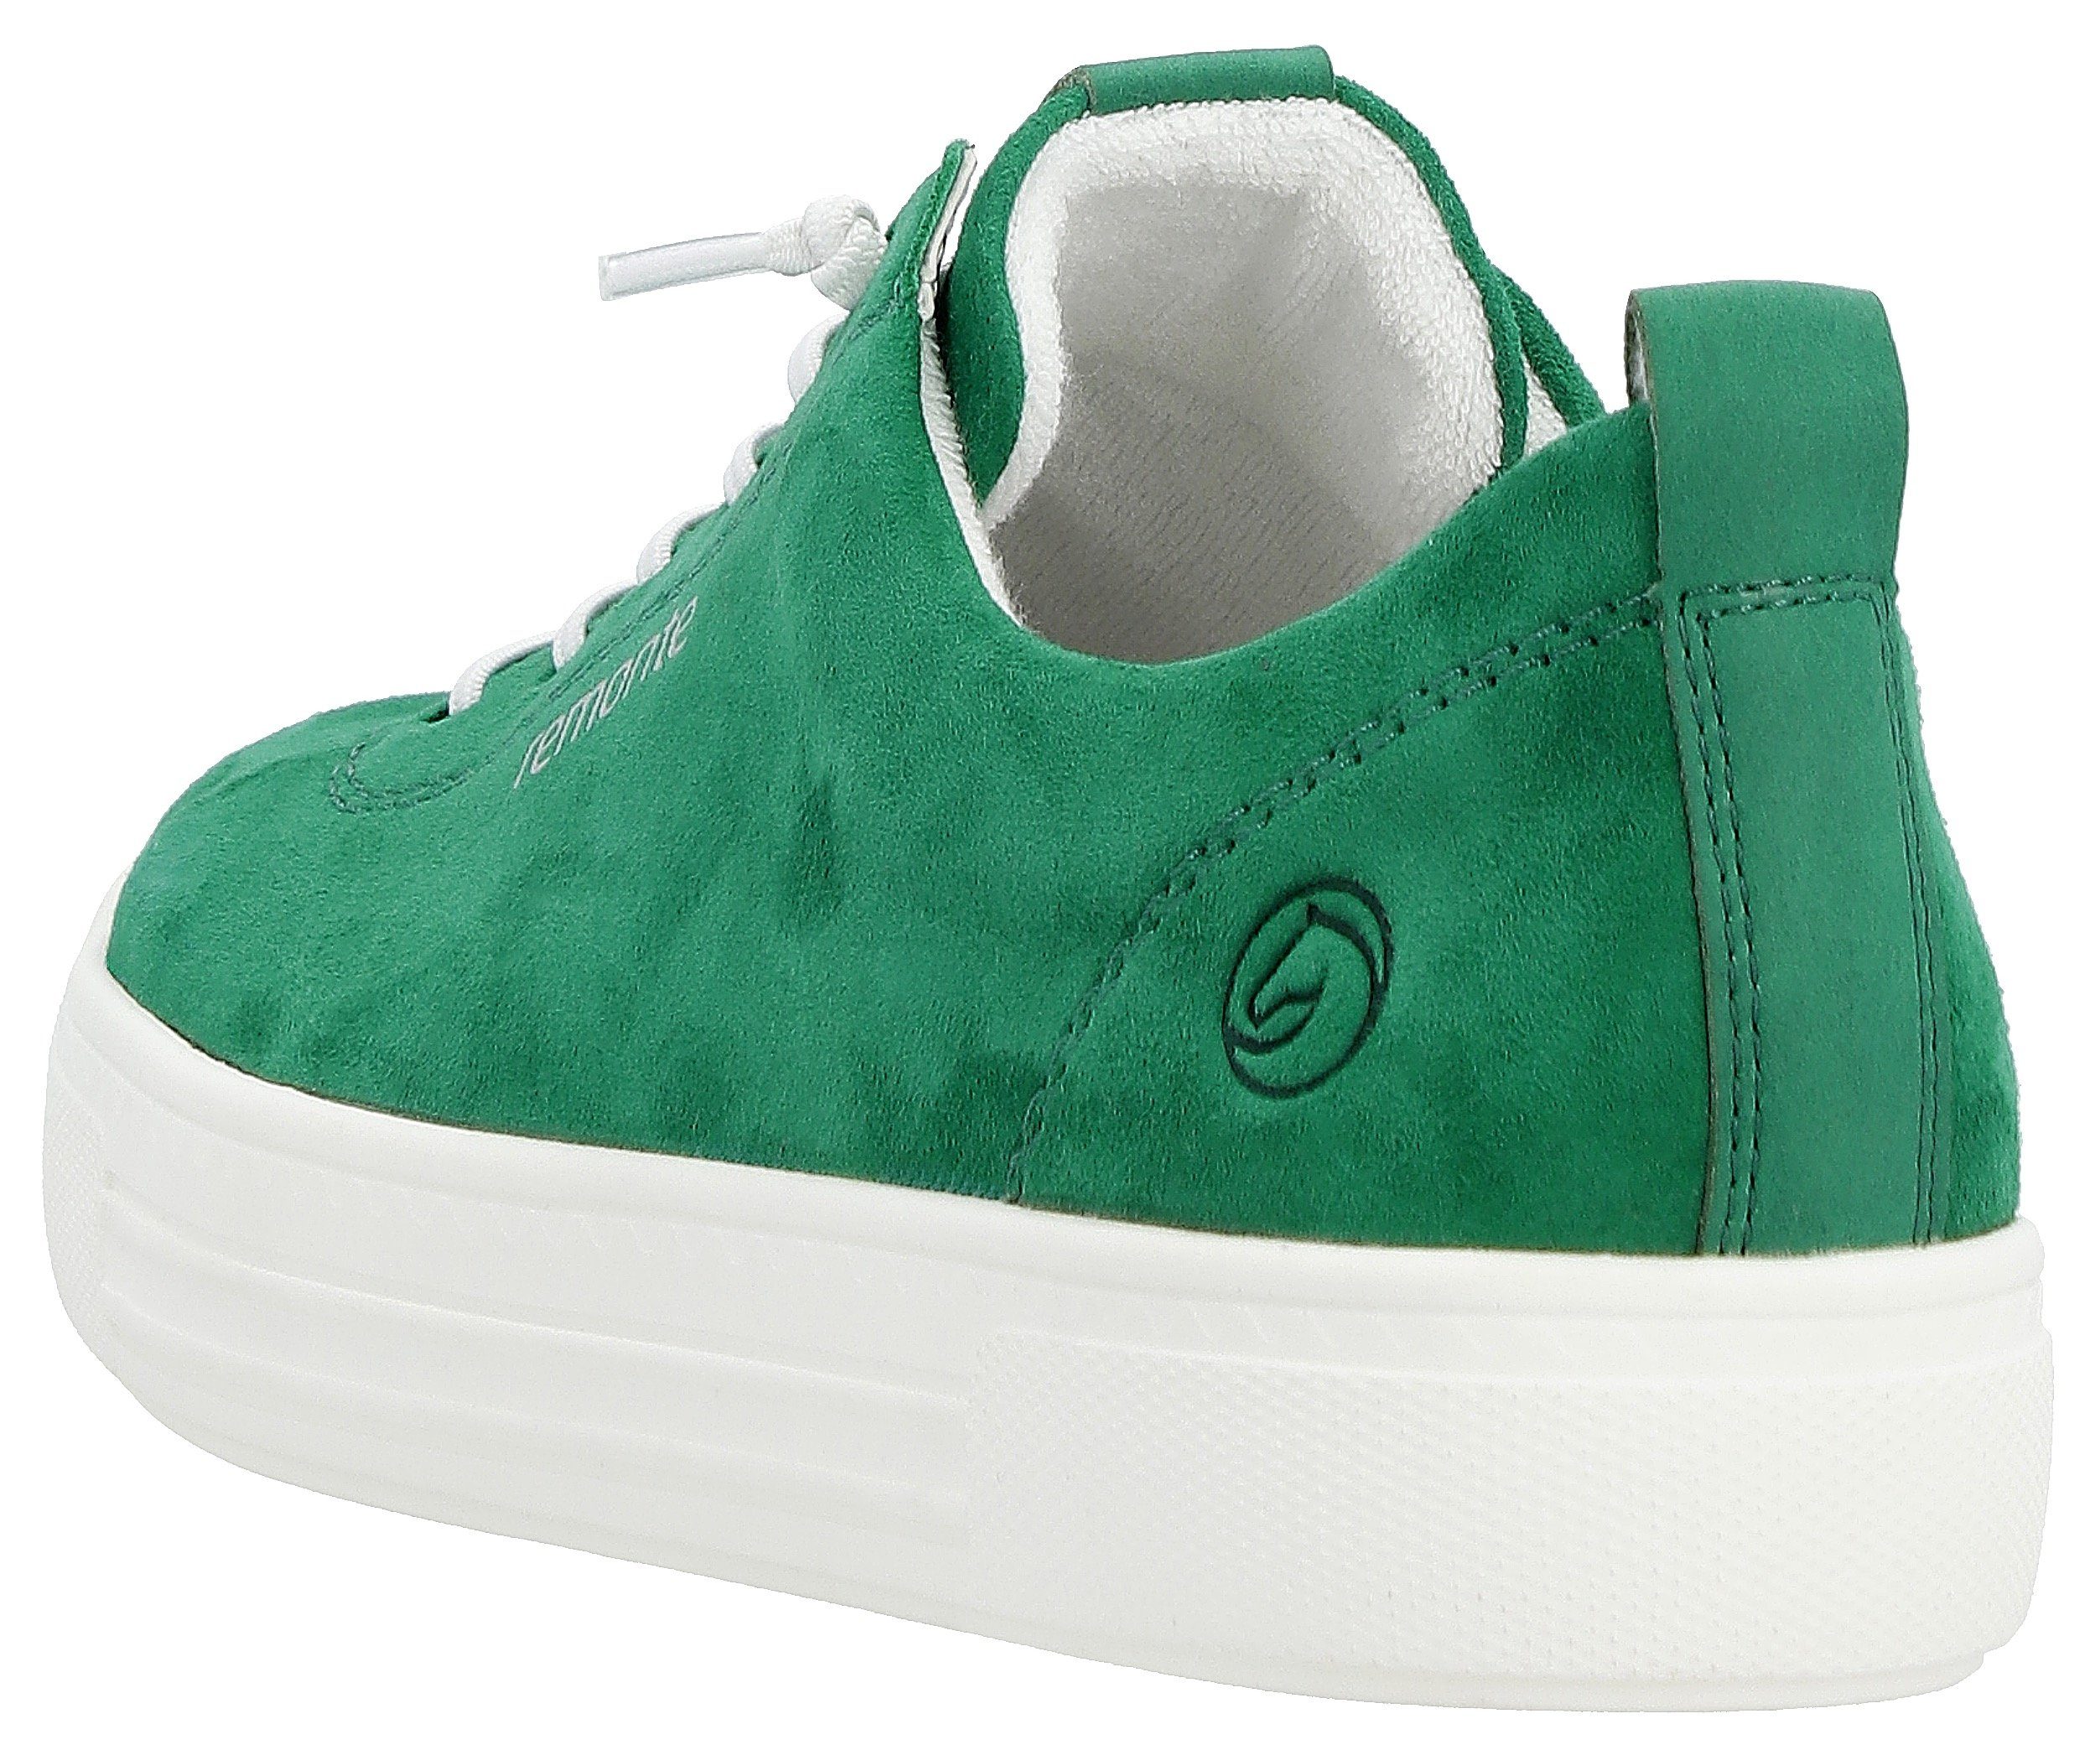 Wechselfußbett Sneaker Remonte praktischem grün mit